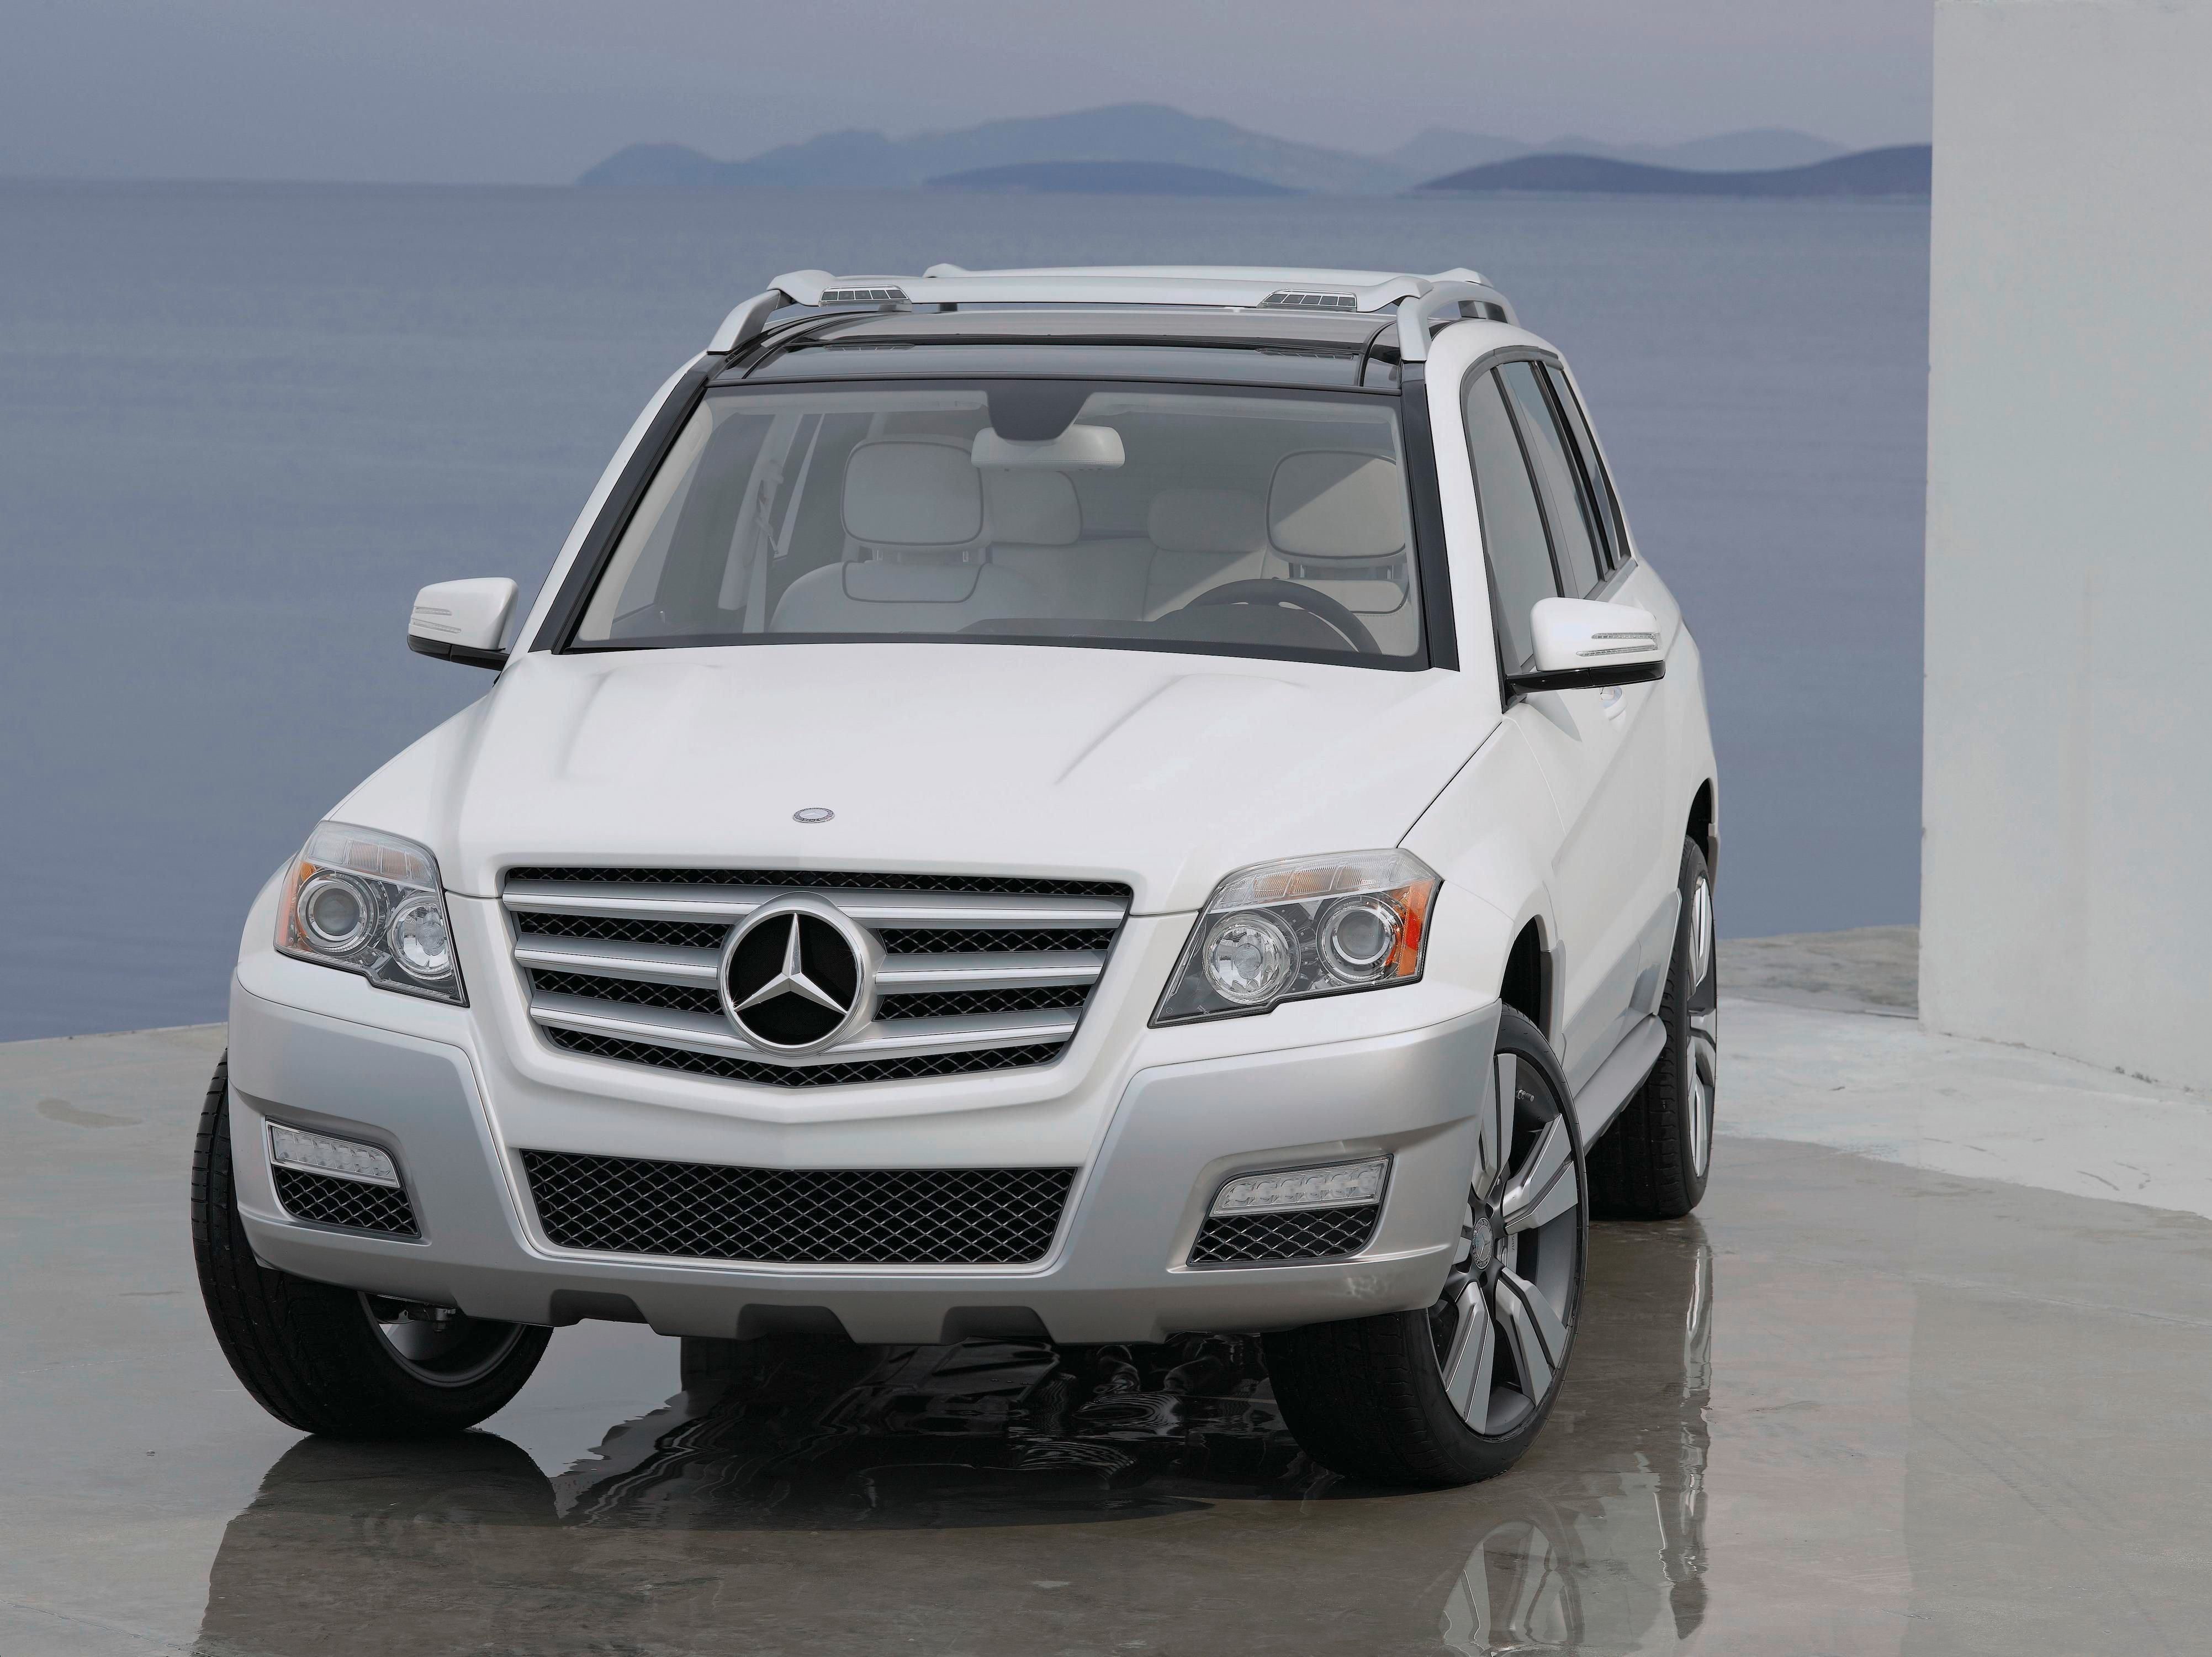 2008 Mercedes Vision GLK Freeside